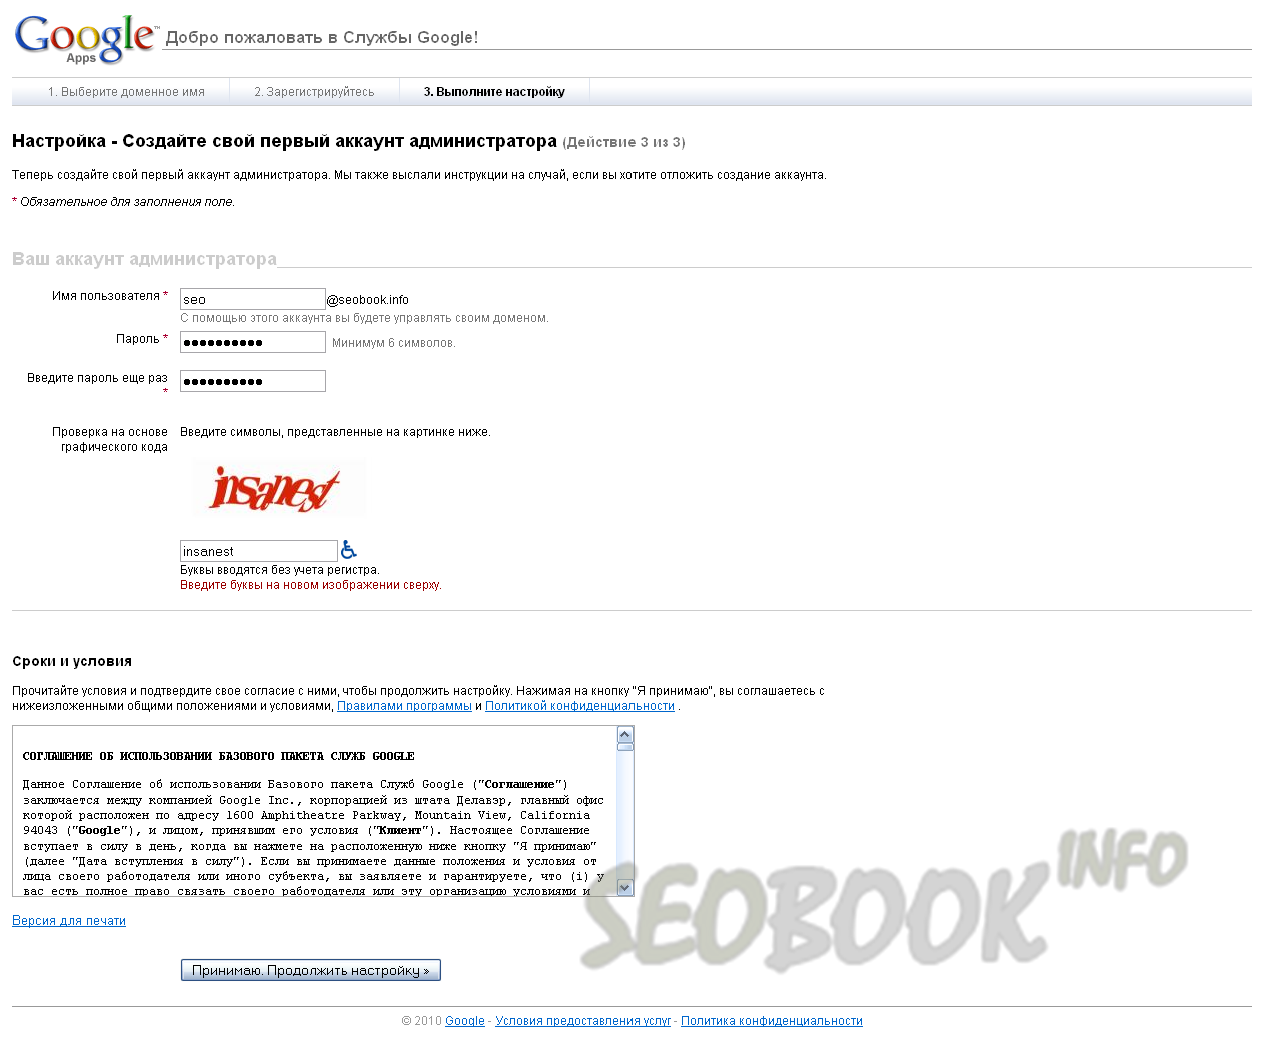 Домен гугл почты. Домен почты. Пример почты с доменом Google:. Белый домен почта гугл. Google dom.